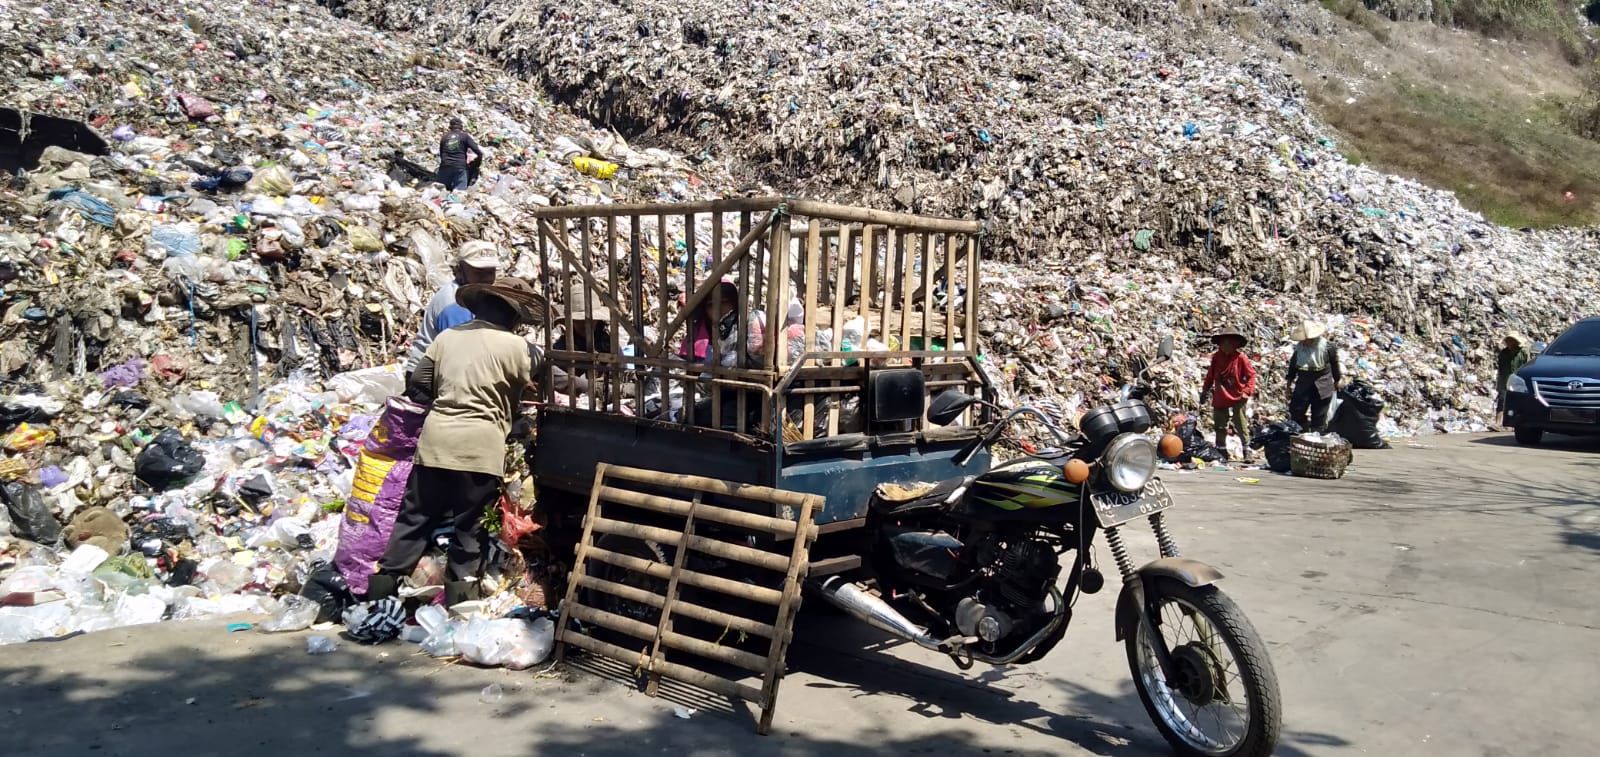 DLH Kabupaten Magelang berupaya untuk mengatasi kapasitas sampah berlebih di wilayahnya